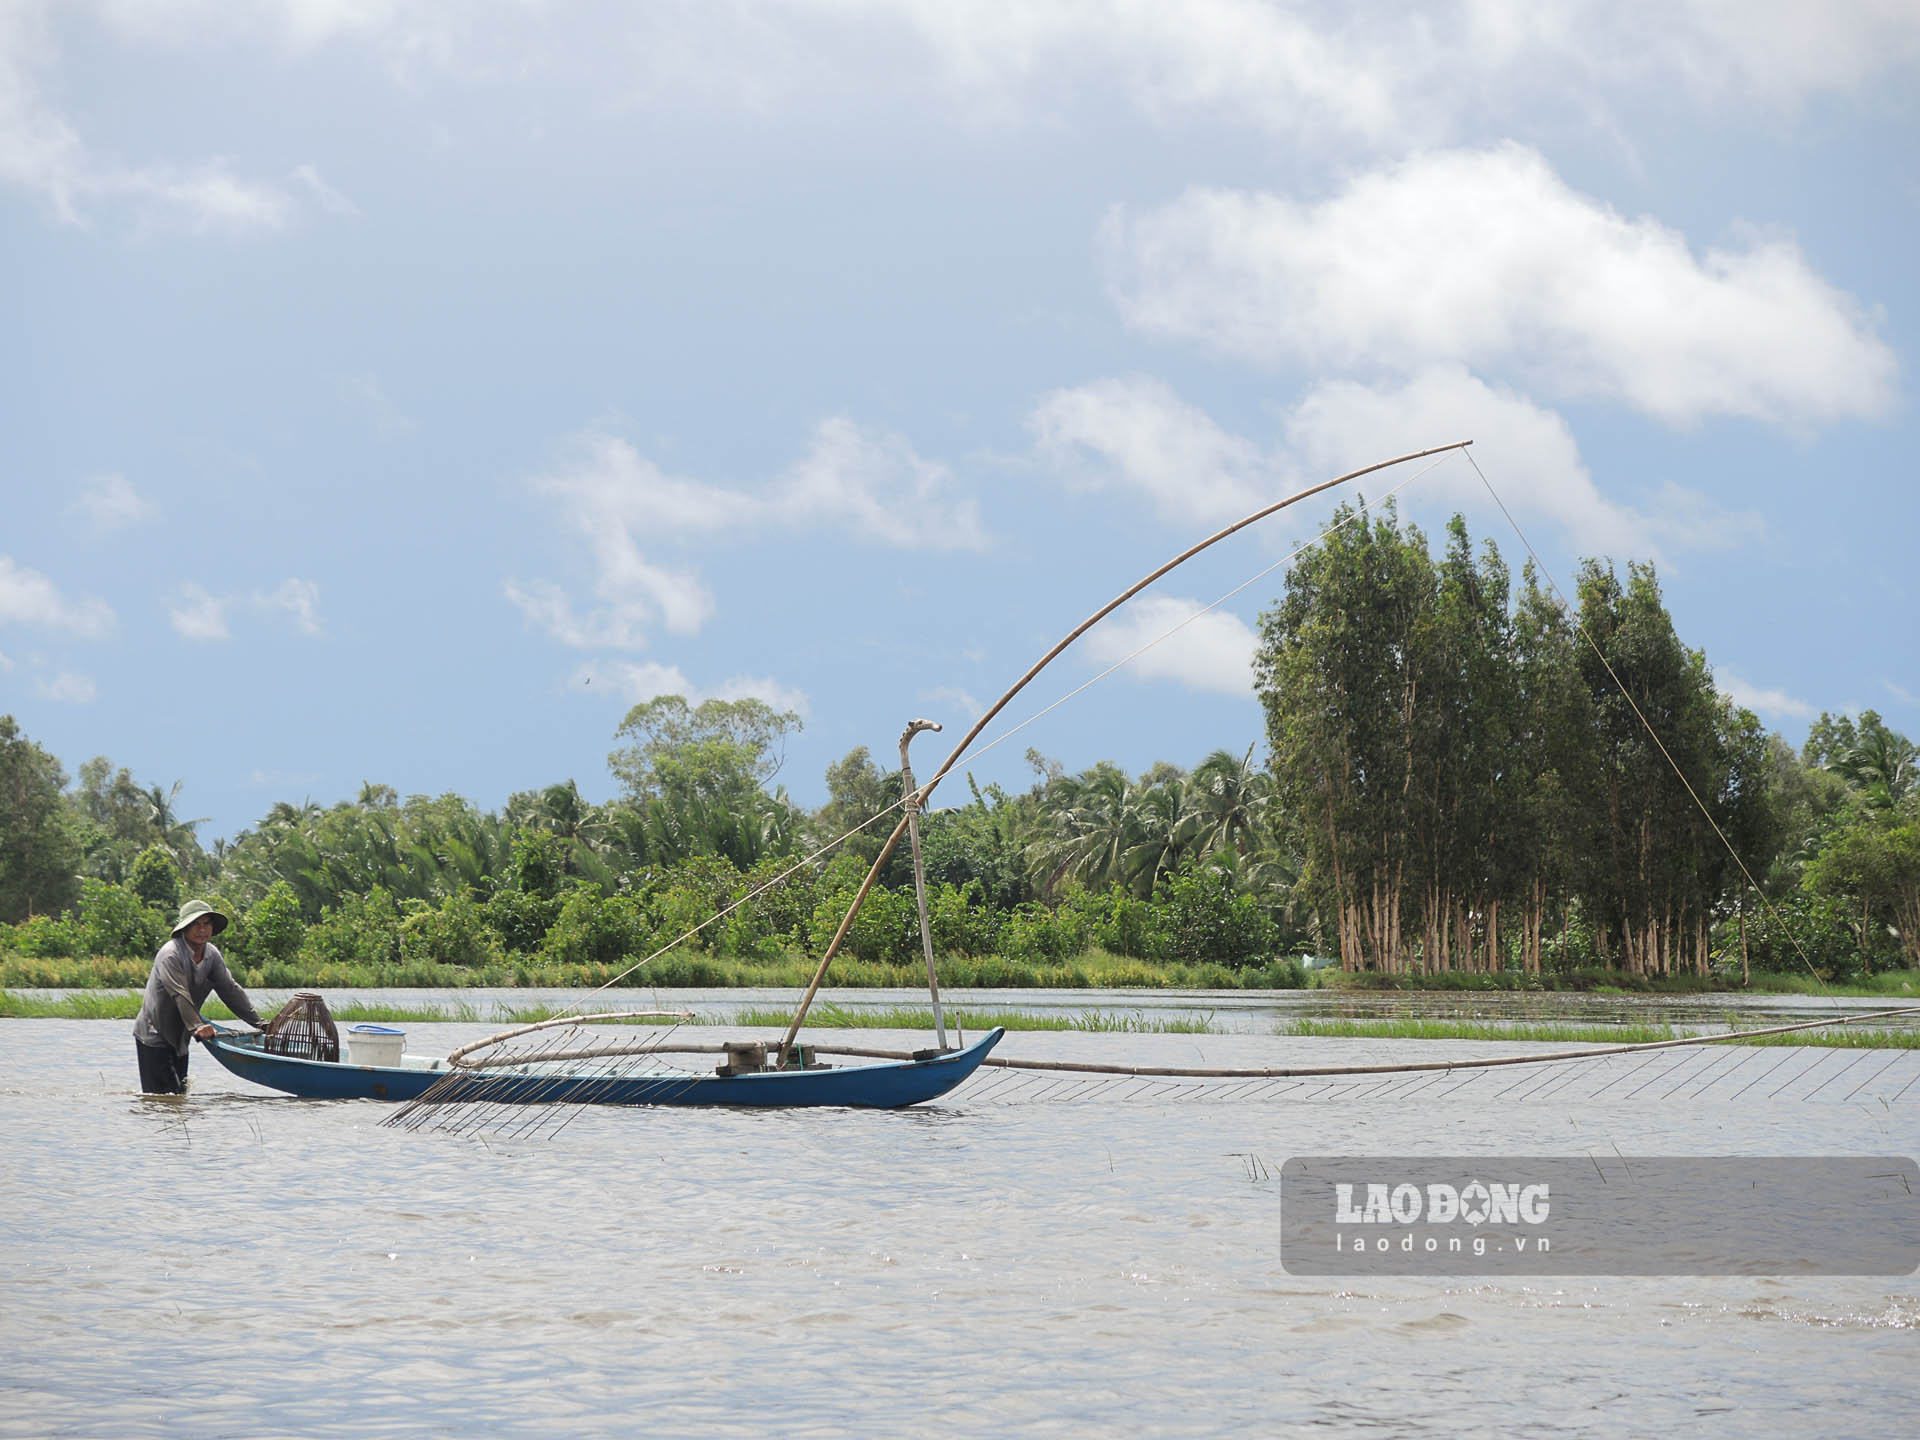 Đẩy côn là nghề hình thành từ sáng kiến nghĩ ra cách bắt cá mà không tận diệt của cư dân Đồng bằng Sông Cửu Long. Ảnh: Phương Anh